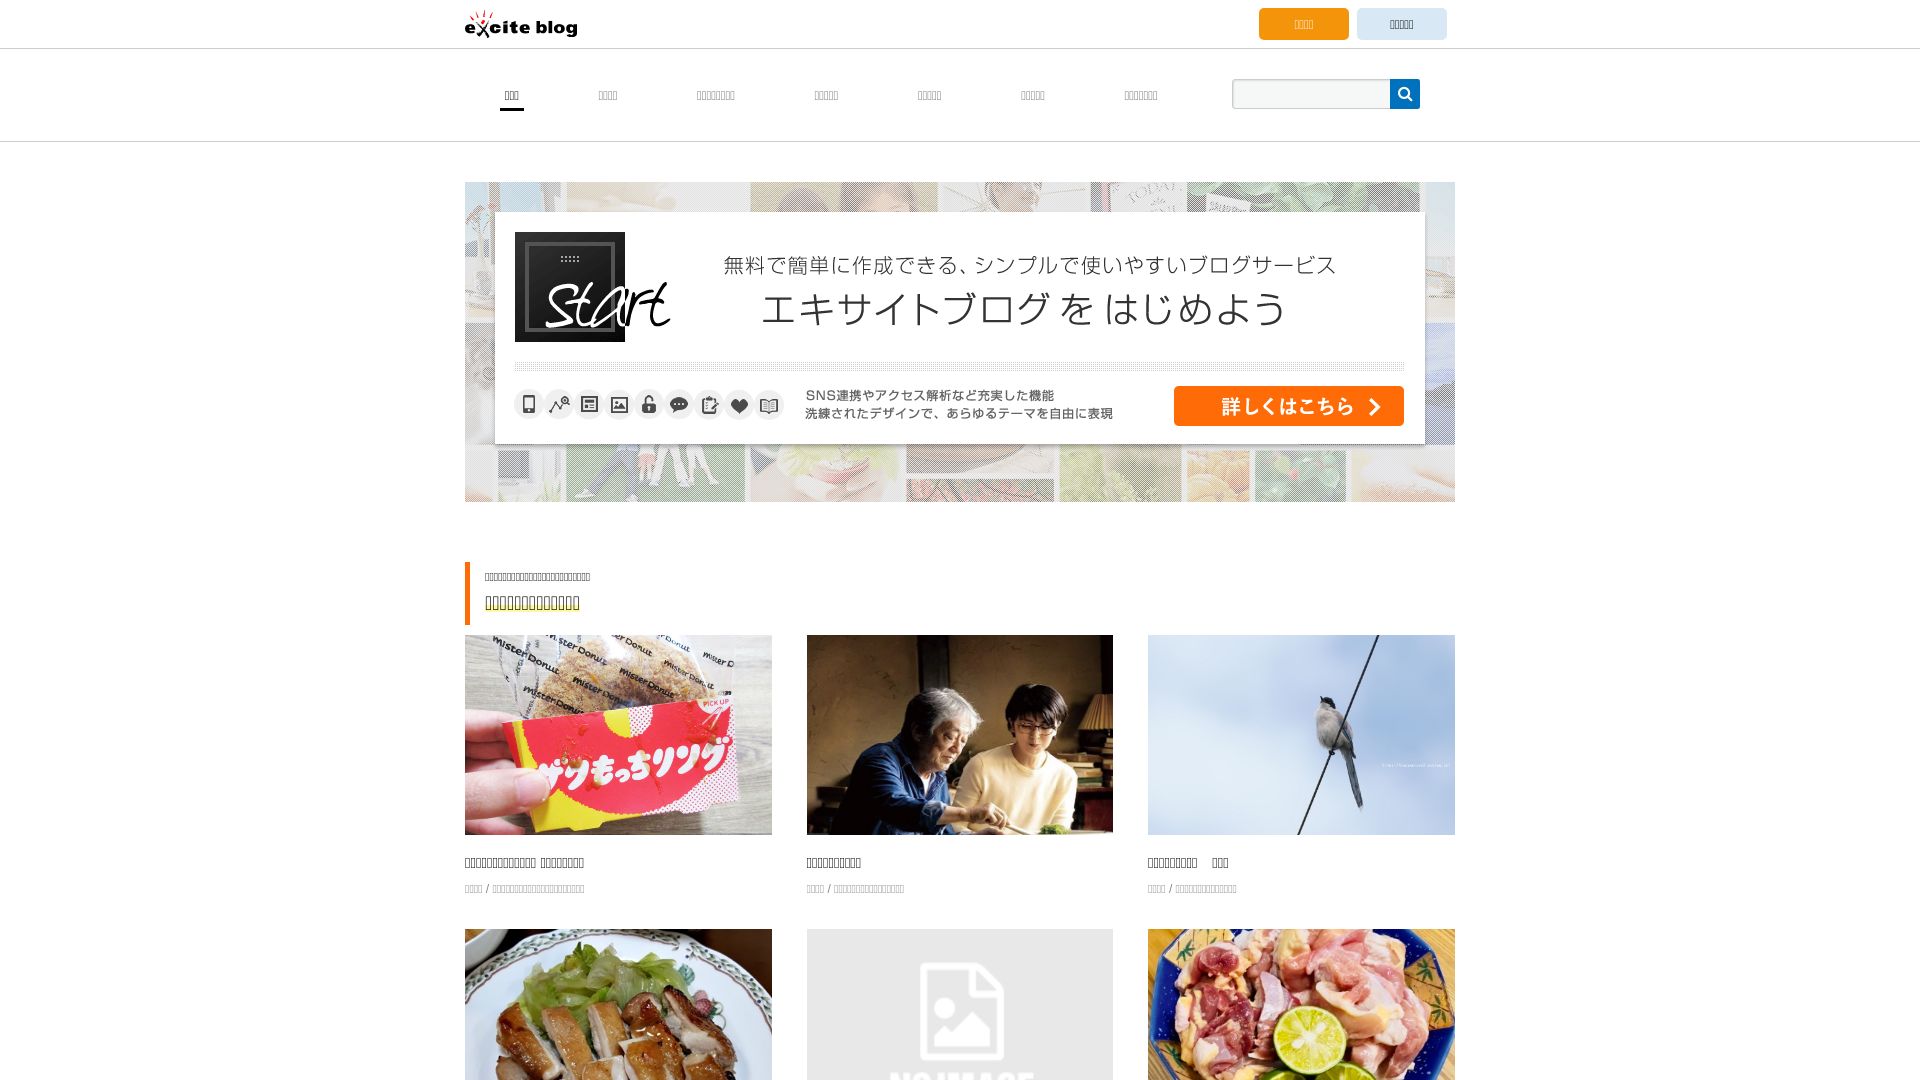 Website status exblog.jp is   ONLINE